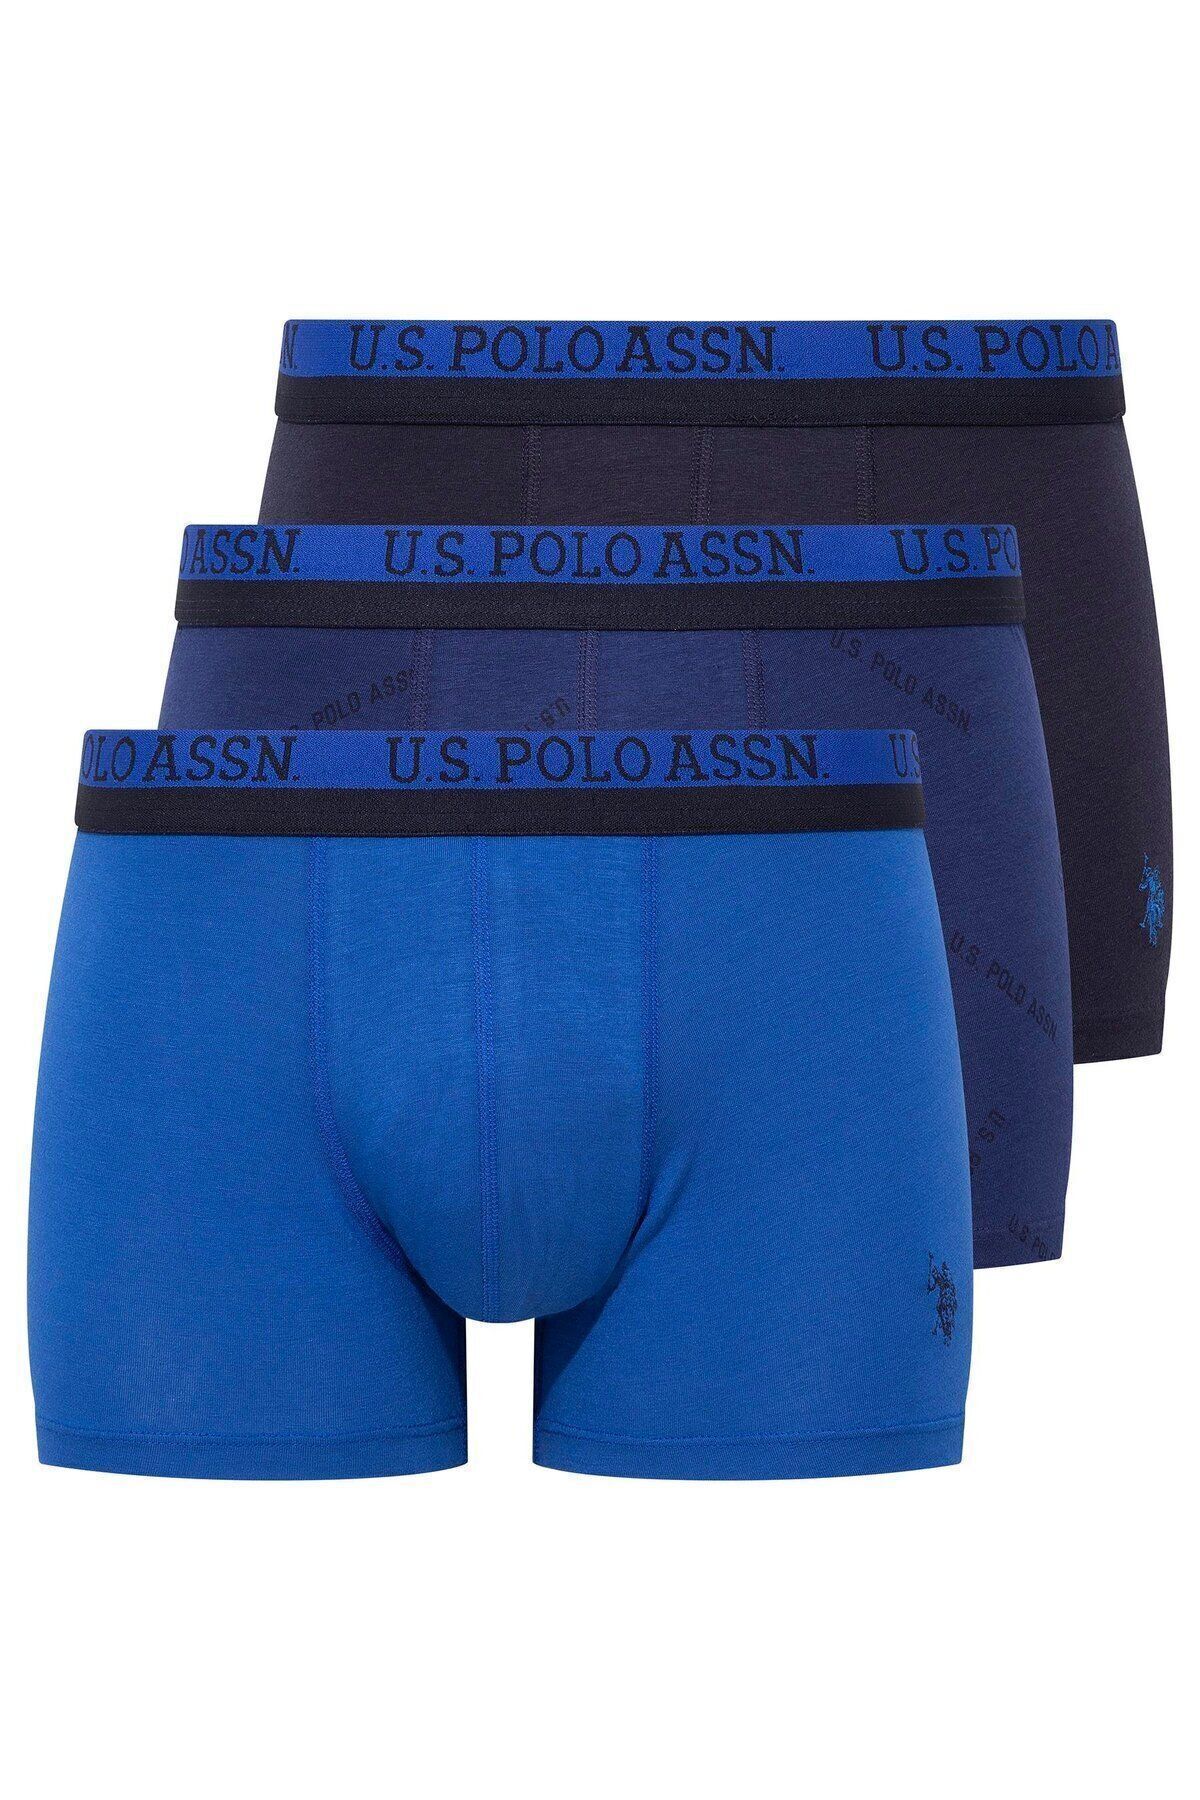 U.S. Polo Assn. Erkek 3'lü Paket Modal Likralı Pamuklu Lacivert-Saks Boxer